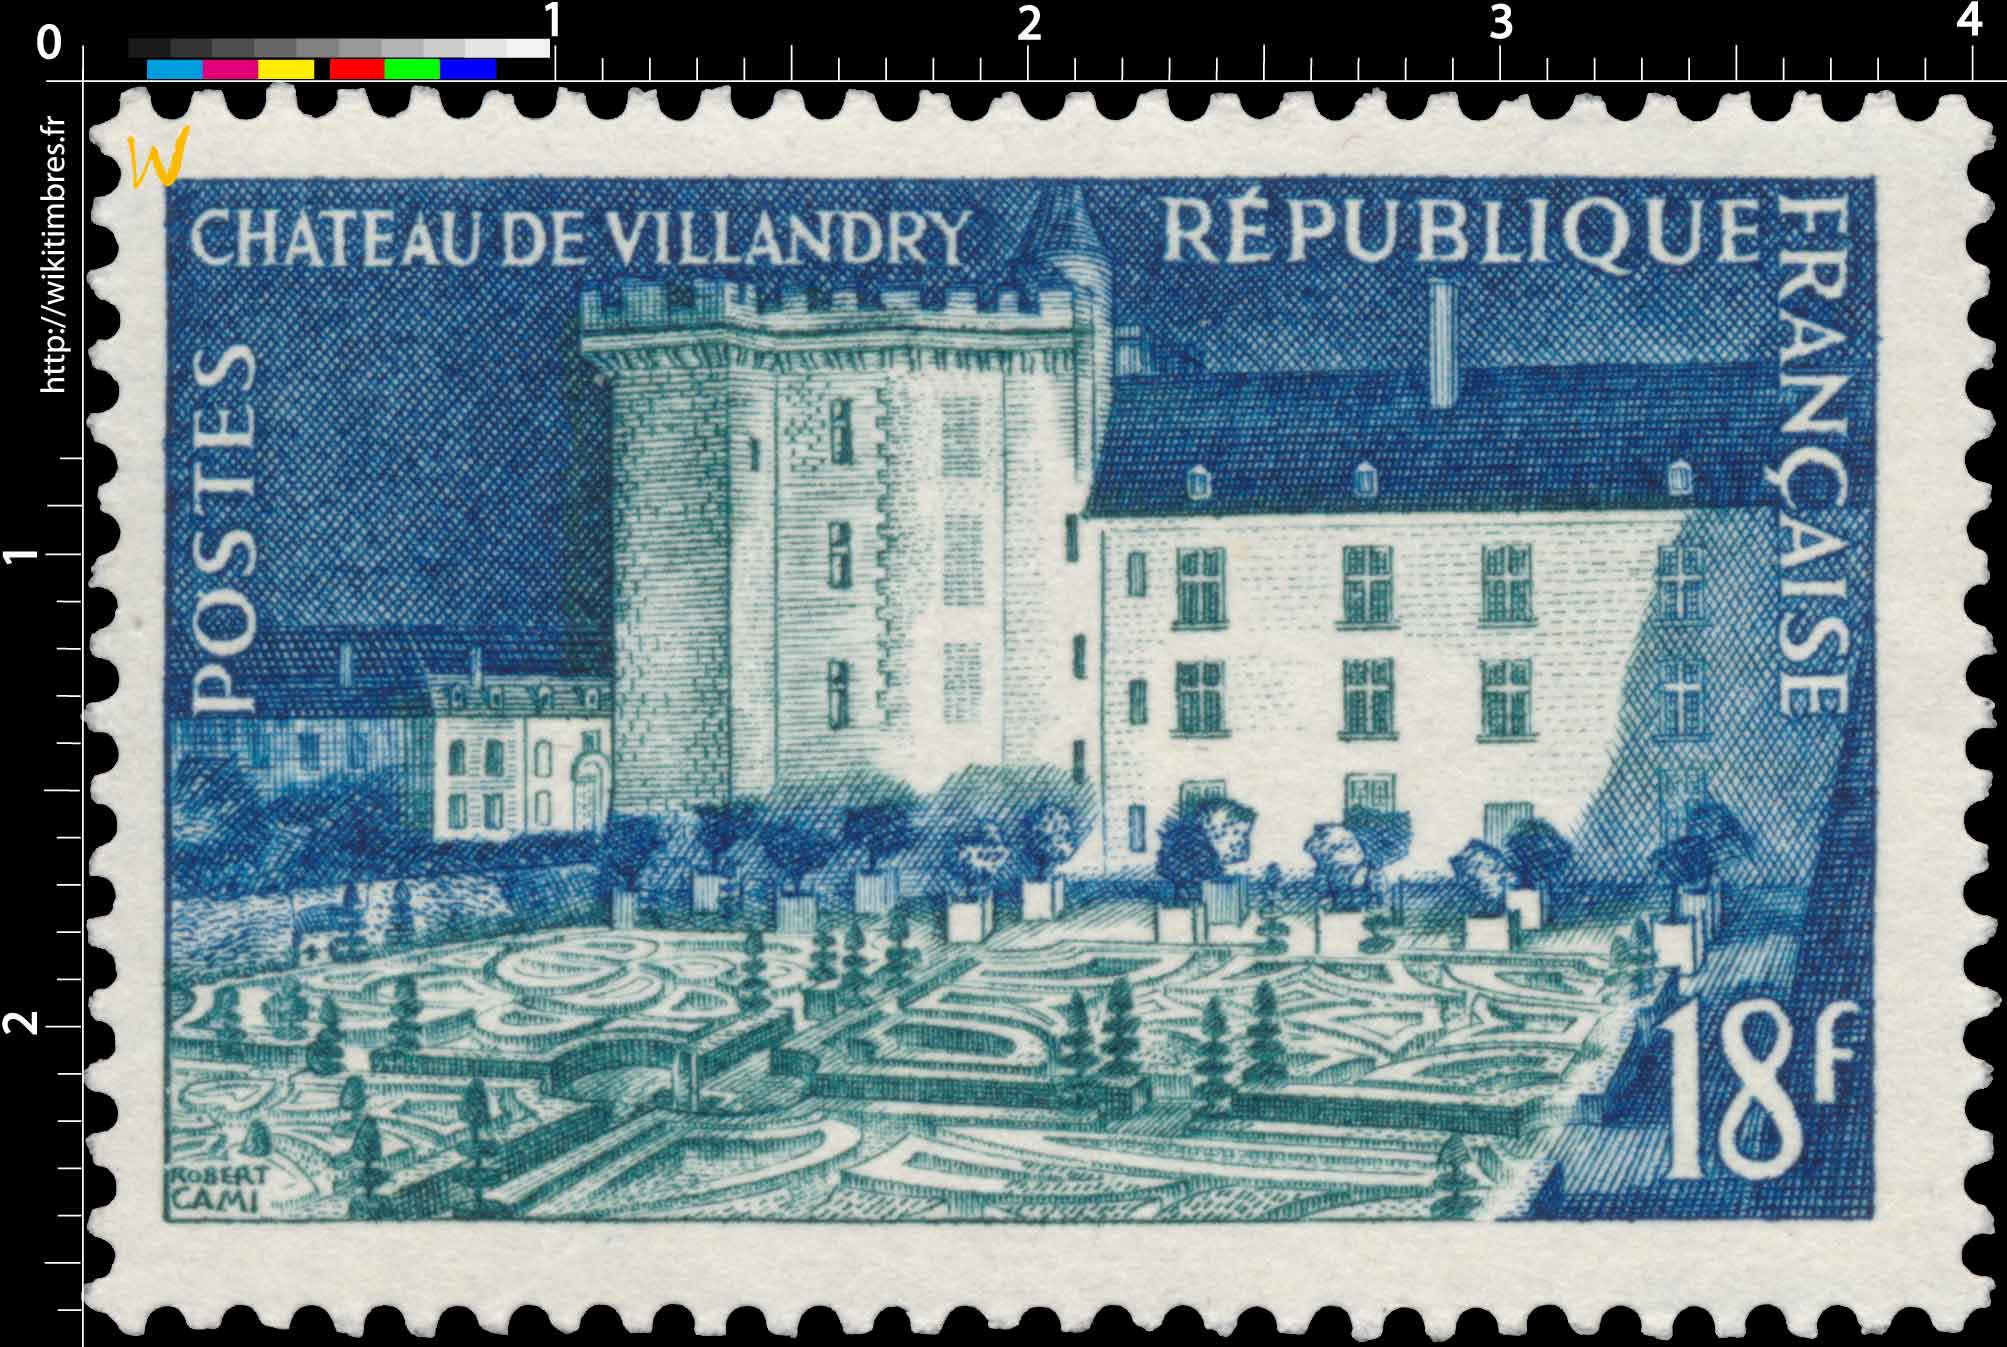 CHÂTEAU DE VILLANDRY